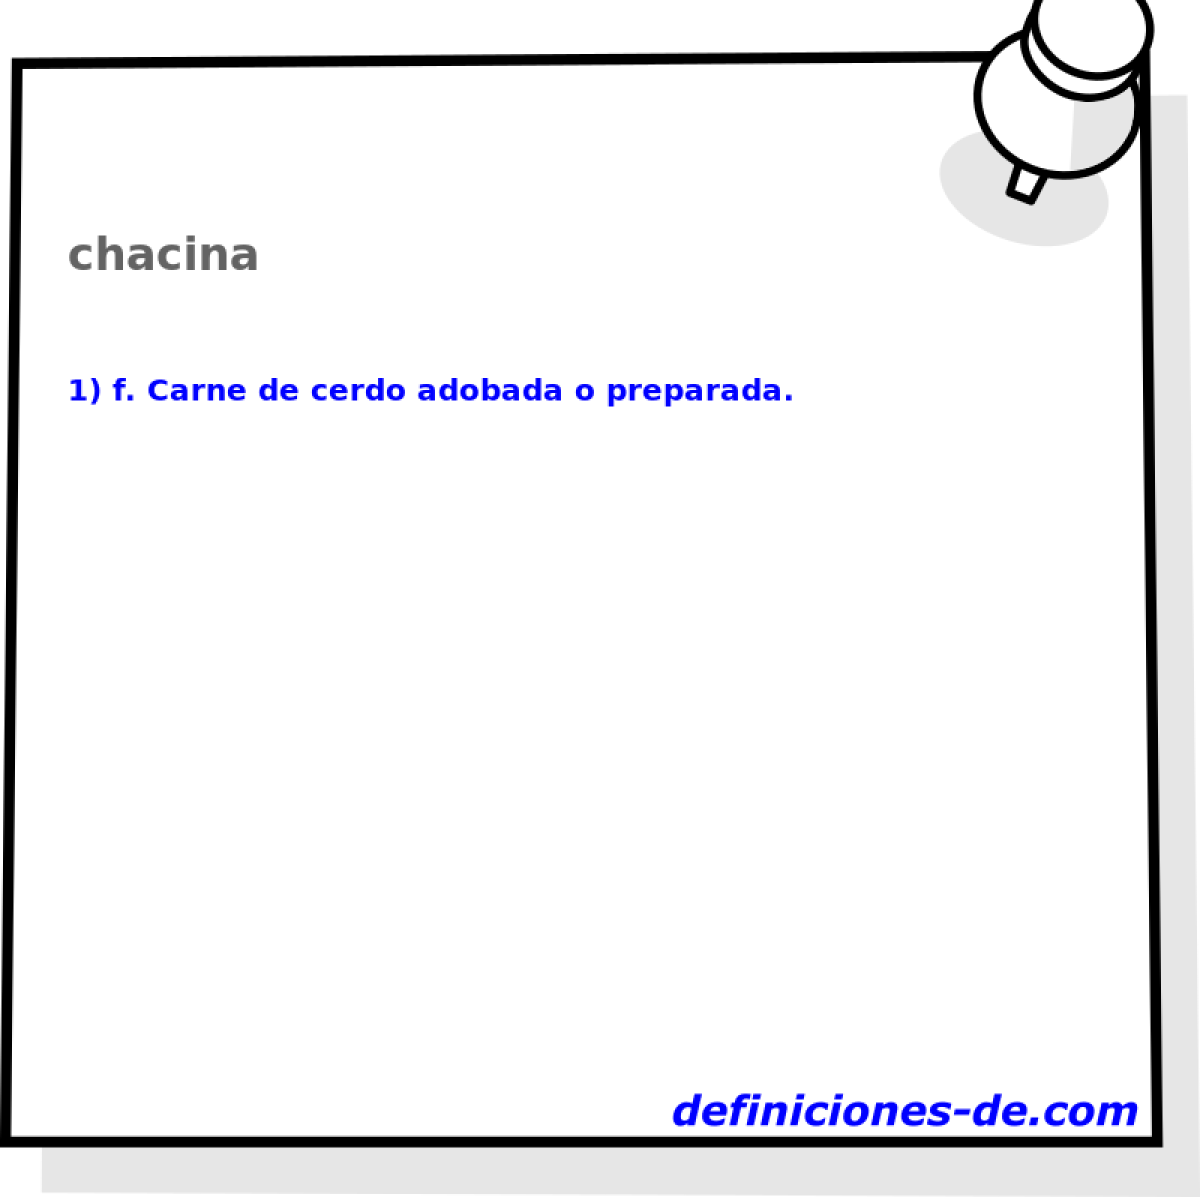 chacina 